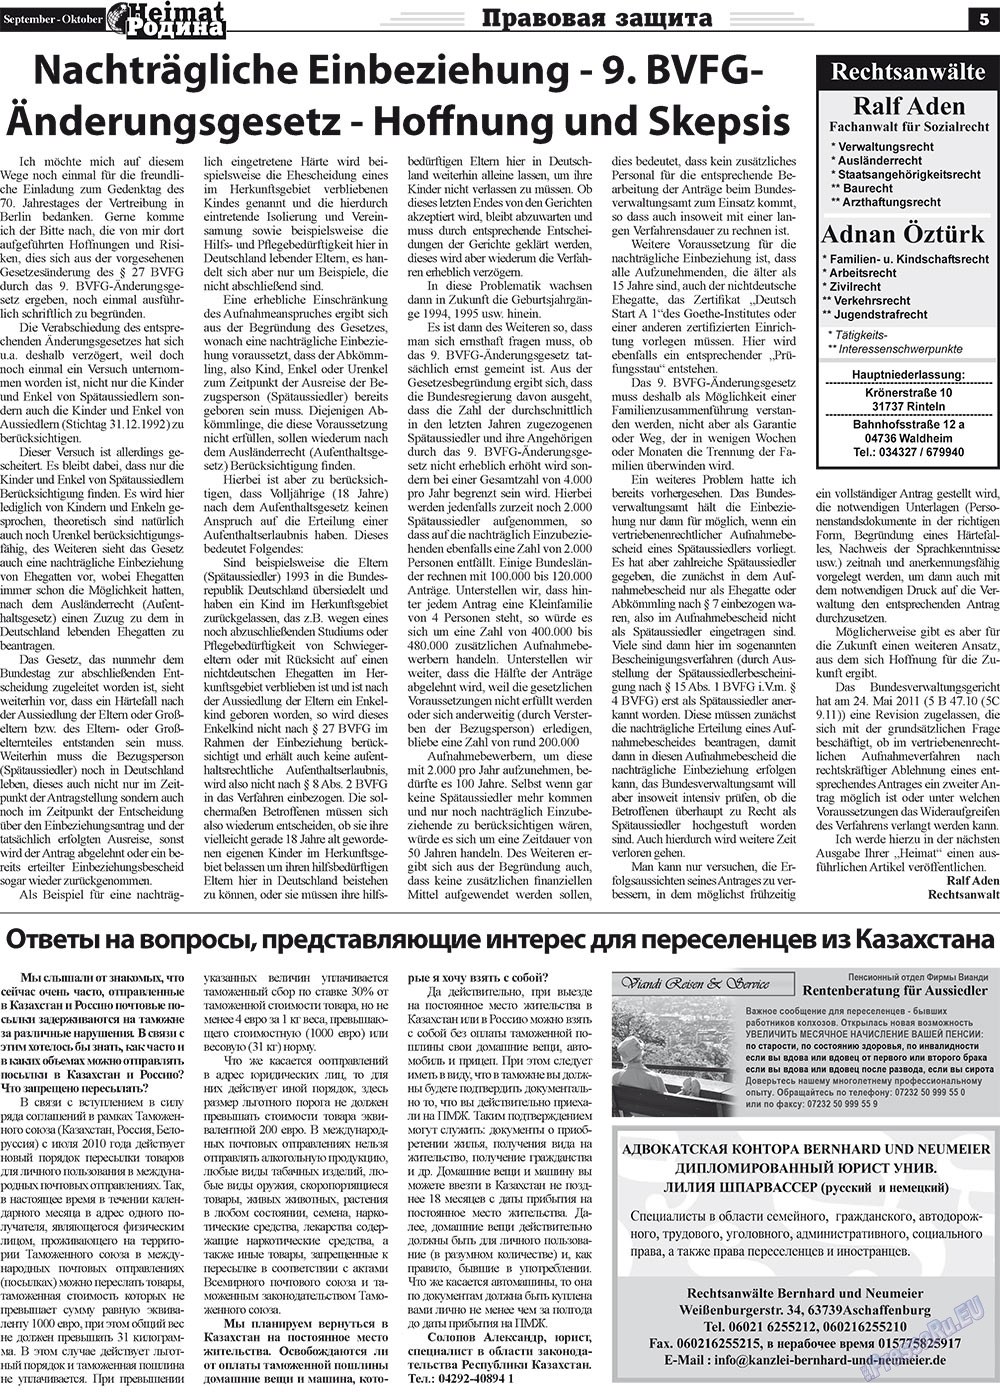 Heimat-Родина (газета). 2011 год, номер 9, стр. 5